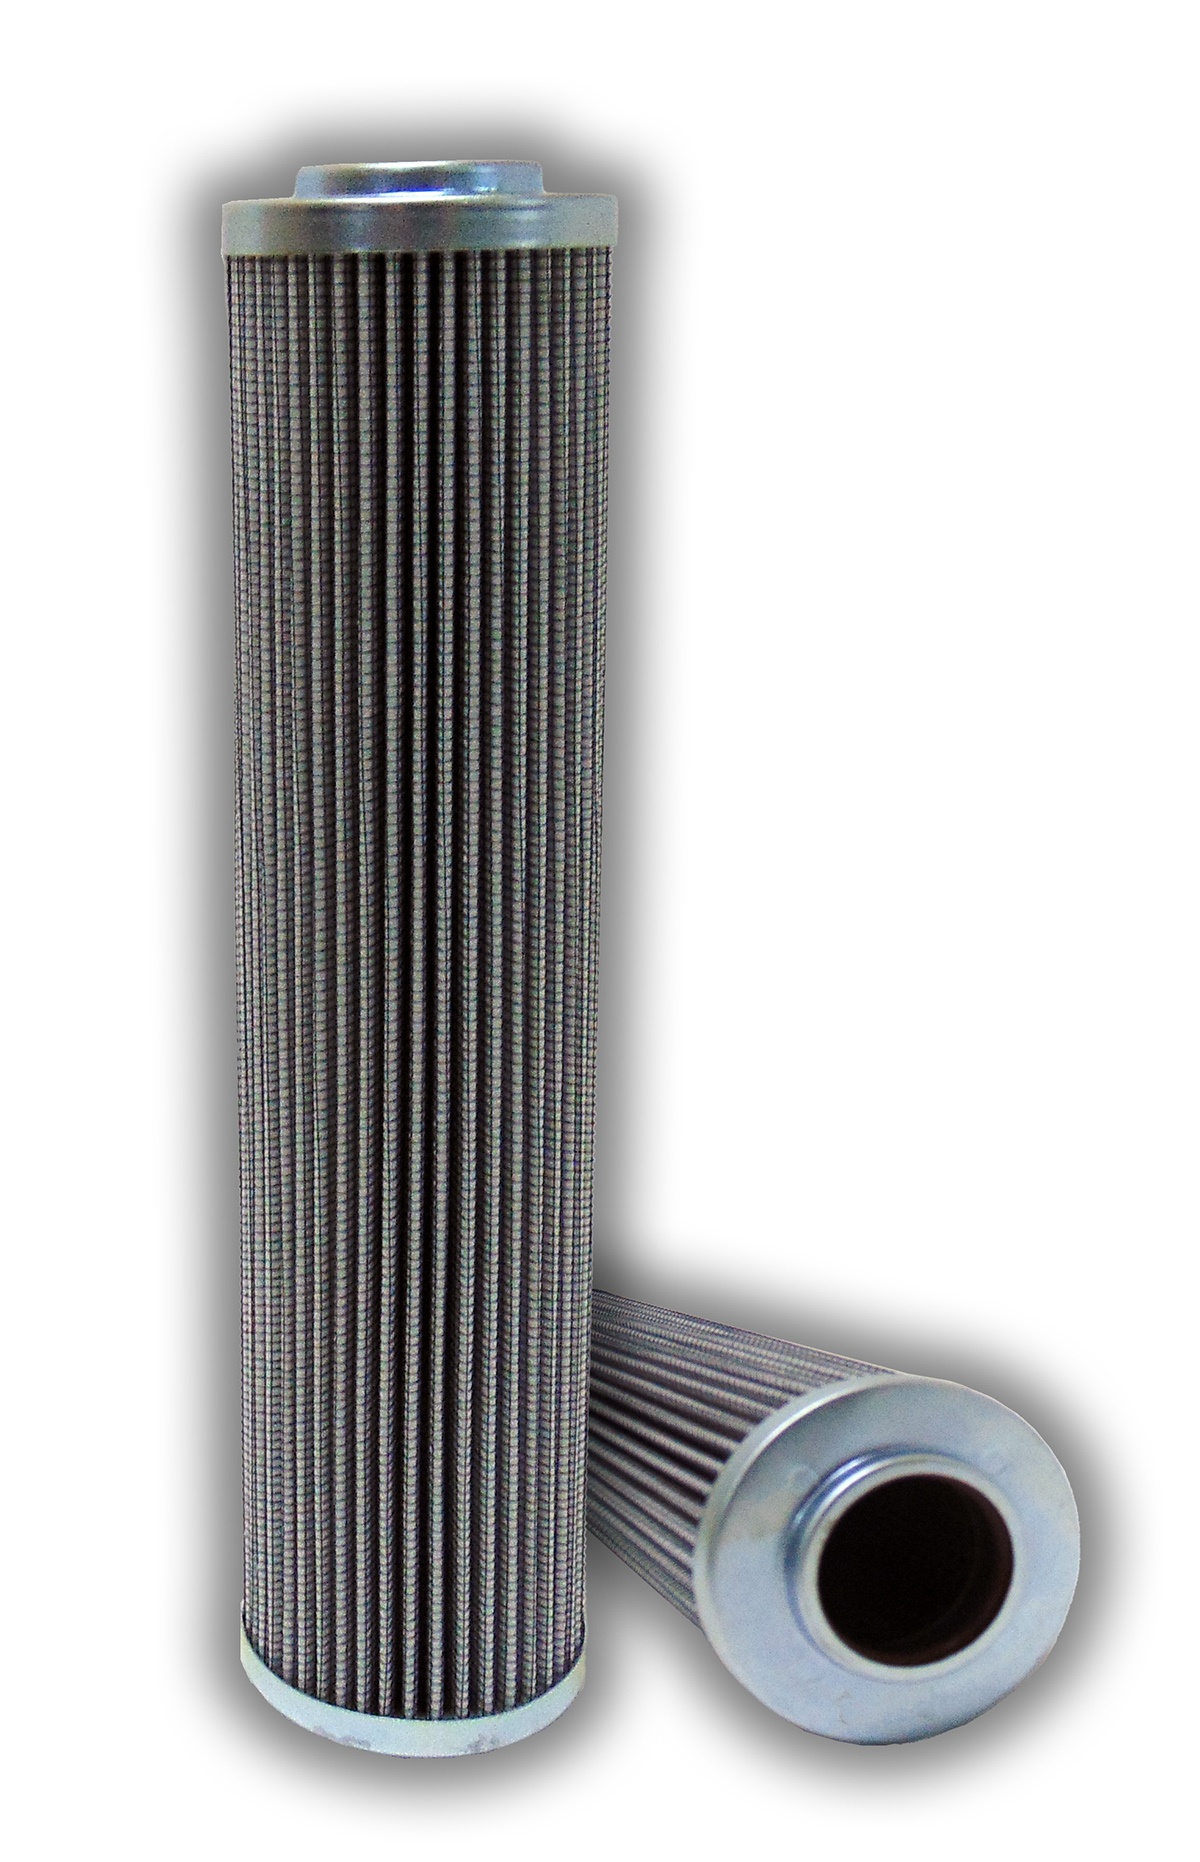 Interchange Hydraulisk filter, glas, 25 Micron Rating, Viton Seal, 6.69 tommer højde